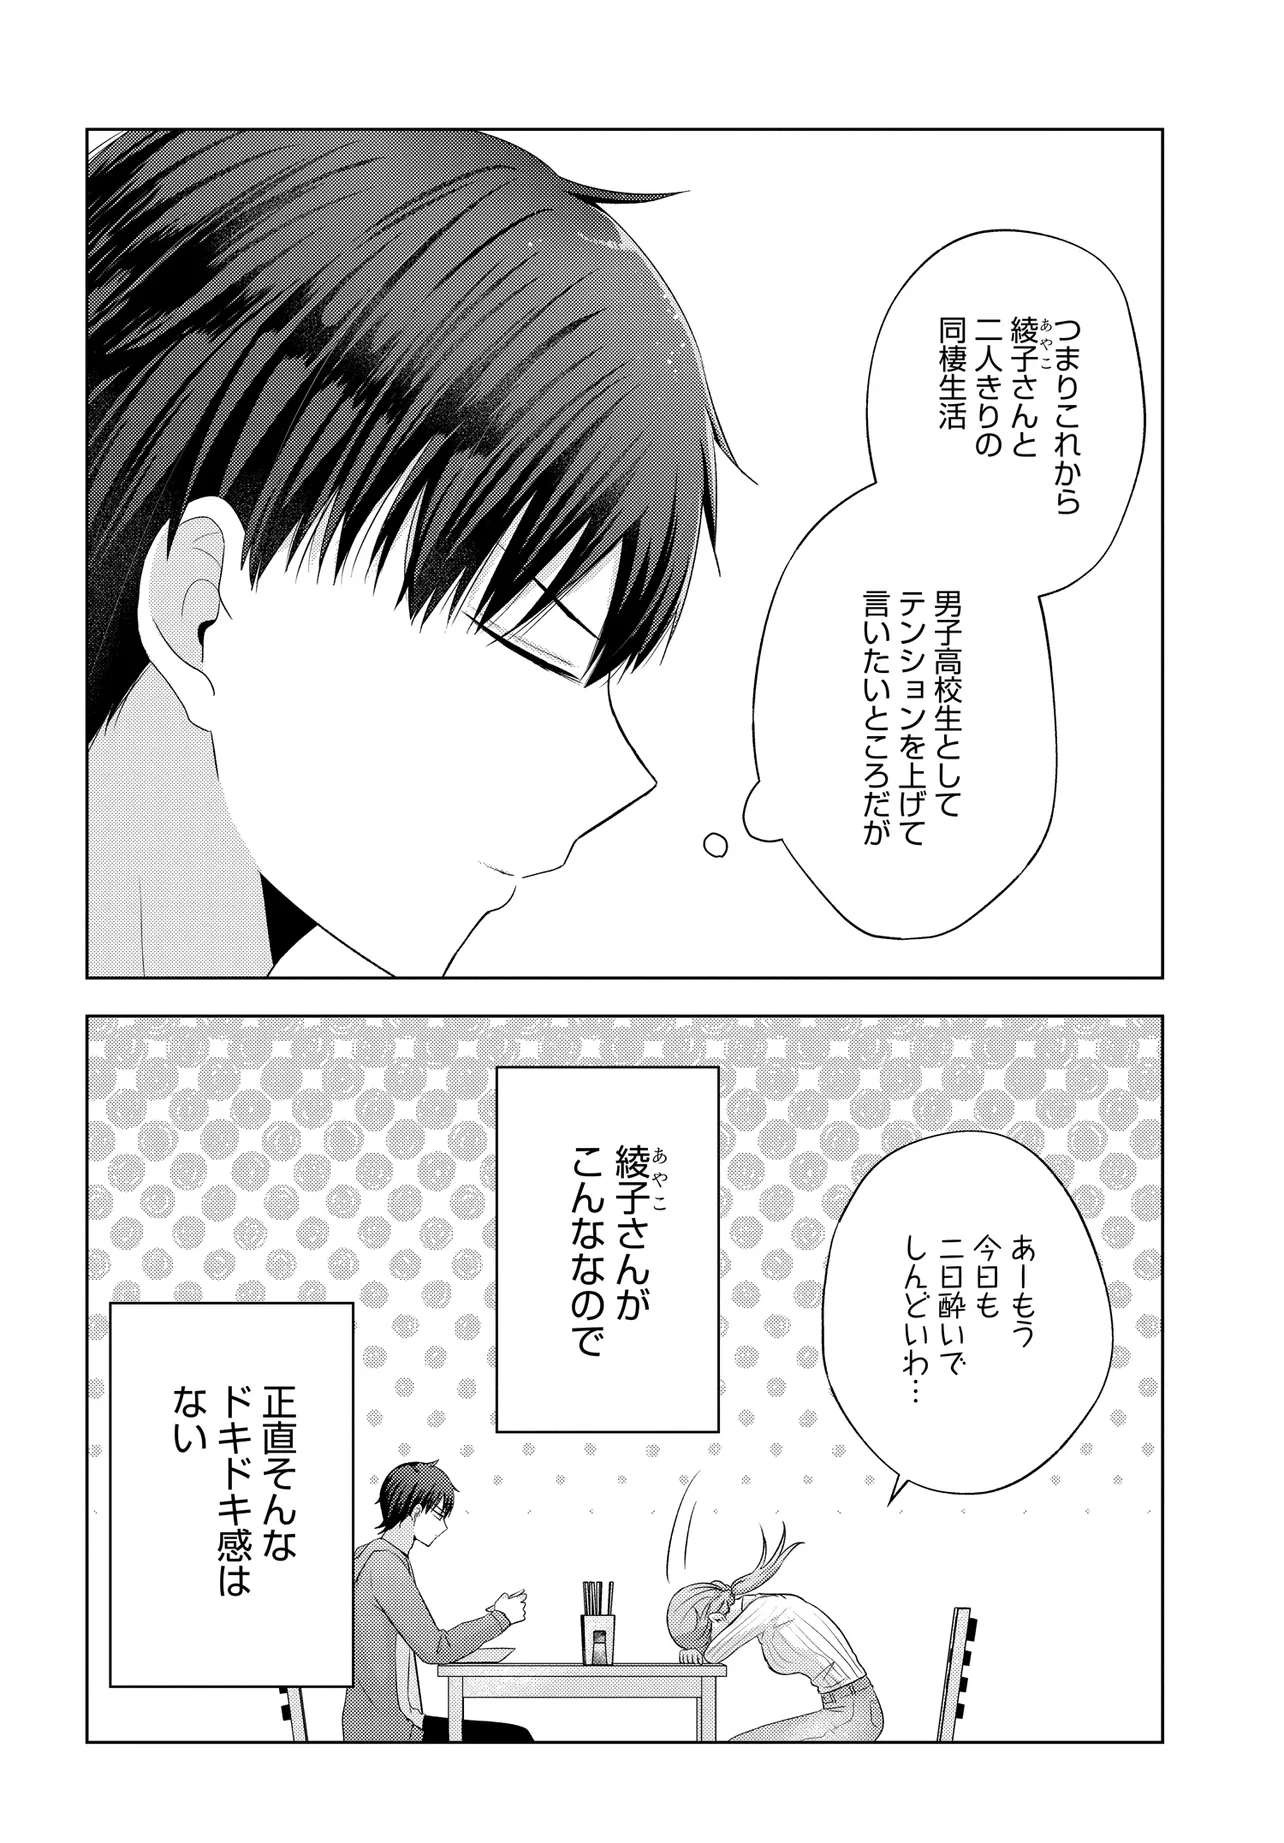 Suufun Go no Mirai ga Wakaru you ni Natta kedo, Onnagokoro wa Wakaranai. - Chapter 1 - Page 16